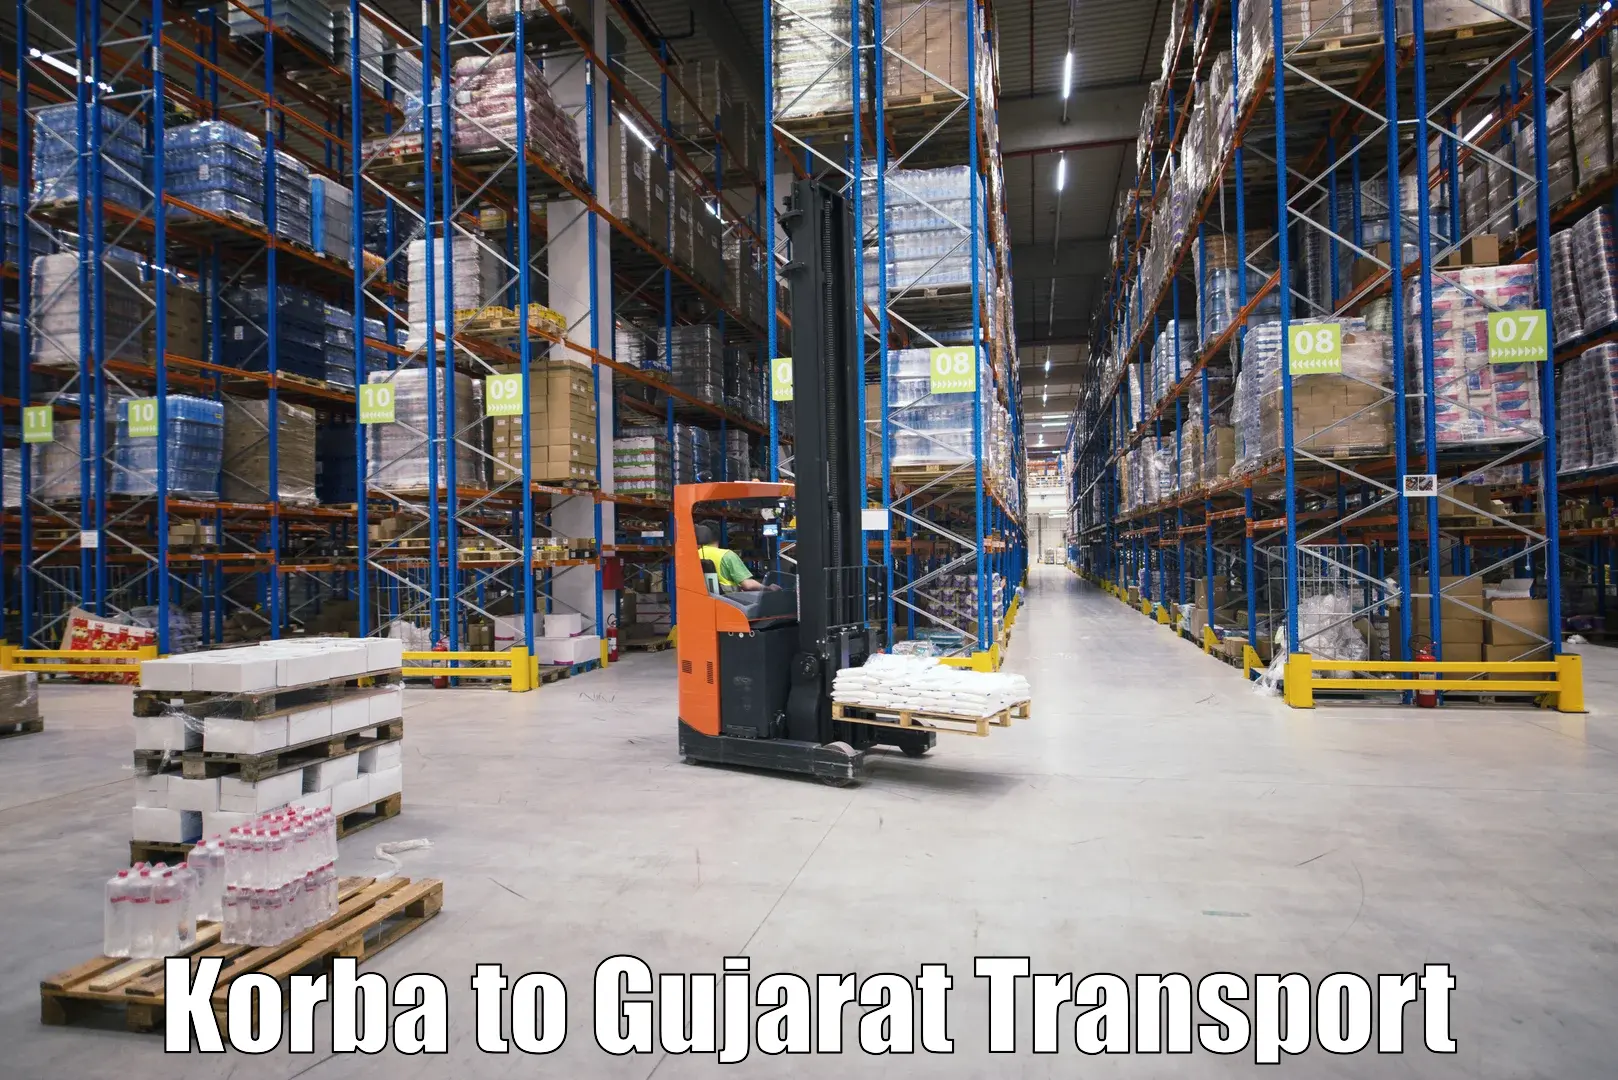 Commercial transport service Korba to Vadnagar